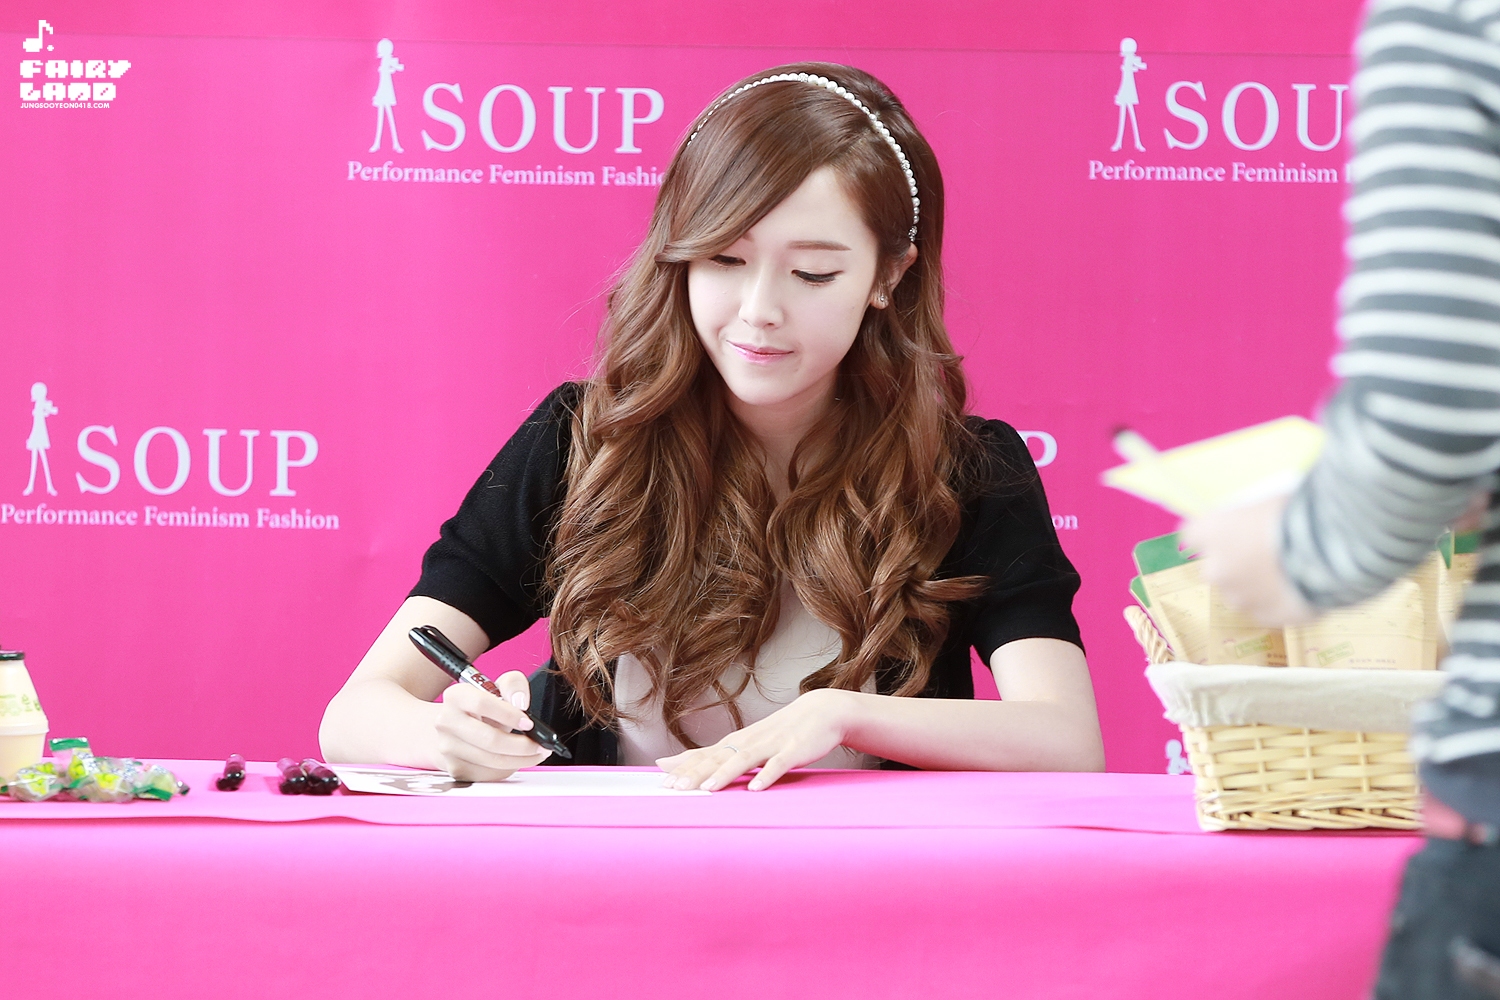 [PIC][04-04-2014]Jessica tham dự buổi fansign cho thương hiệu "SOUP" vào trưa nay - Page 2 2327F5465342B7280EBC58